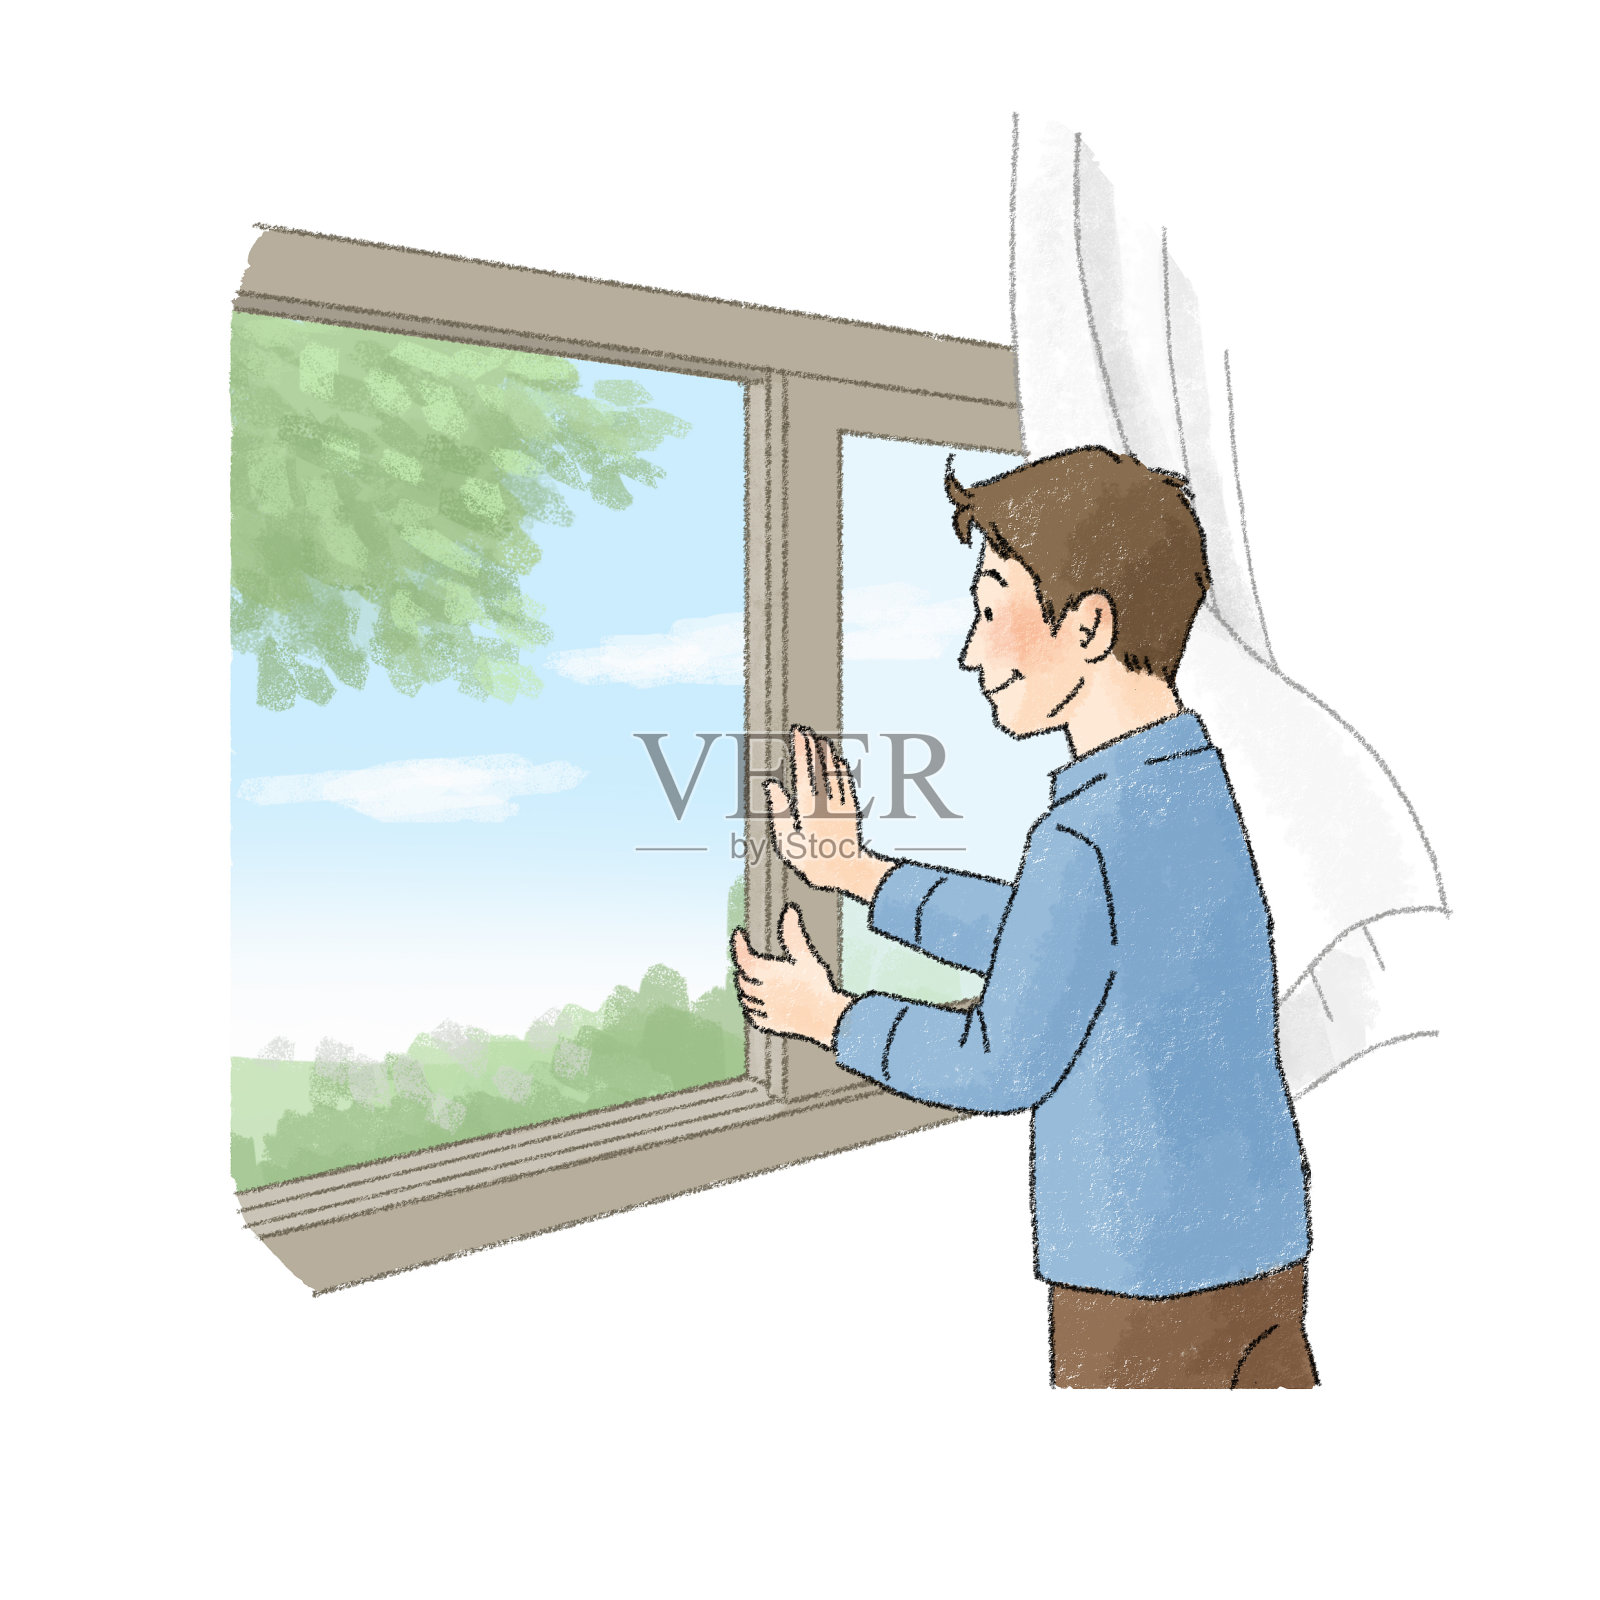 一个人打开窗户通风的插图(人)插画图片素材